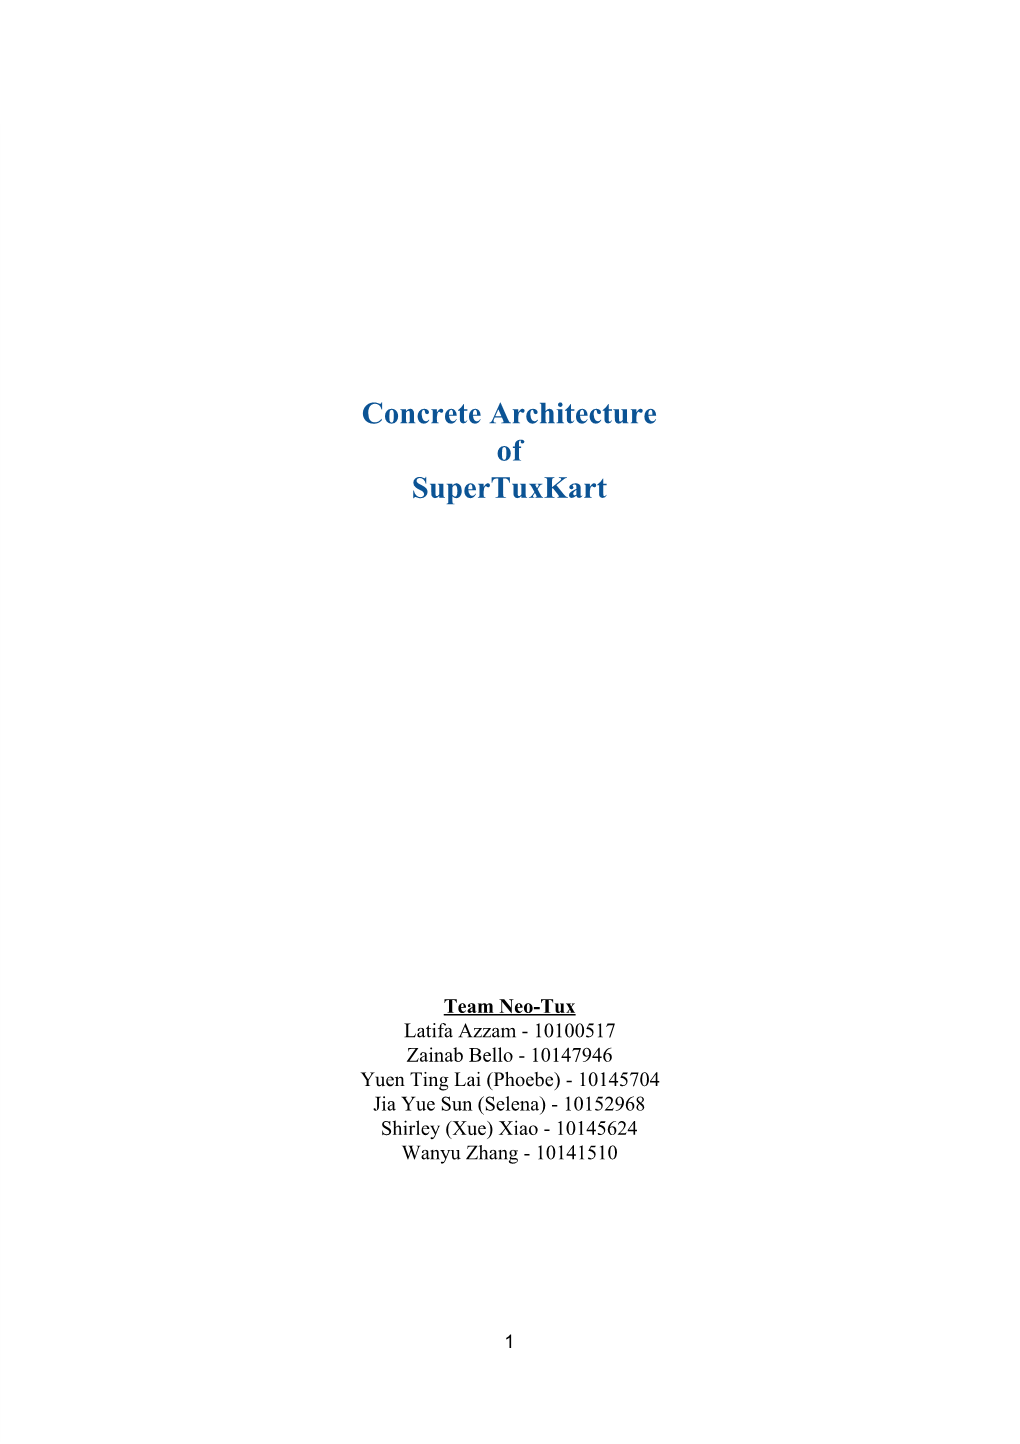 Concrete Architecture of Supertuxkart